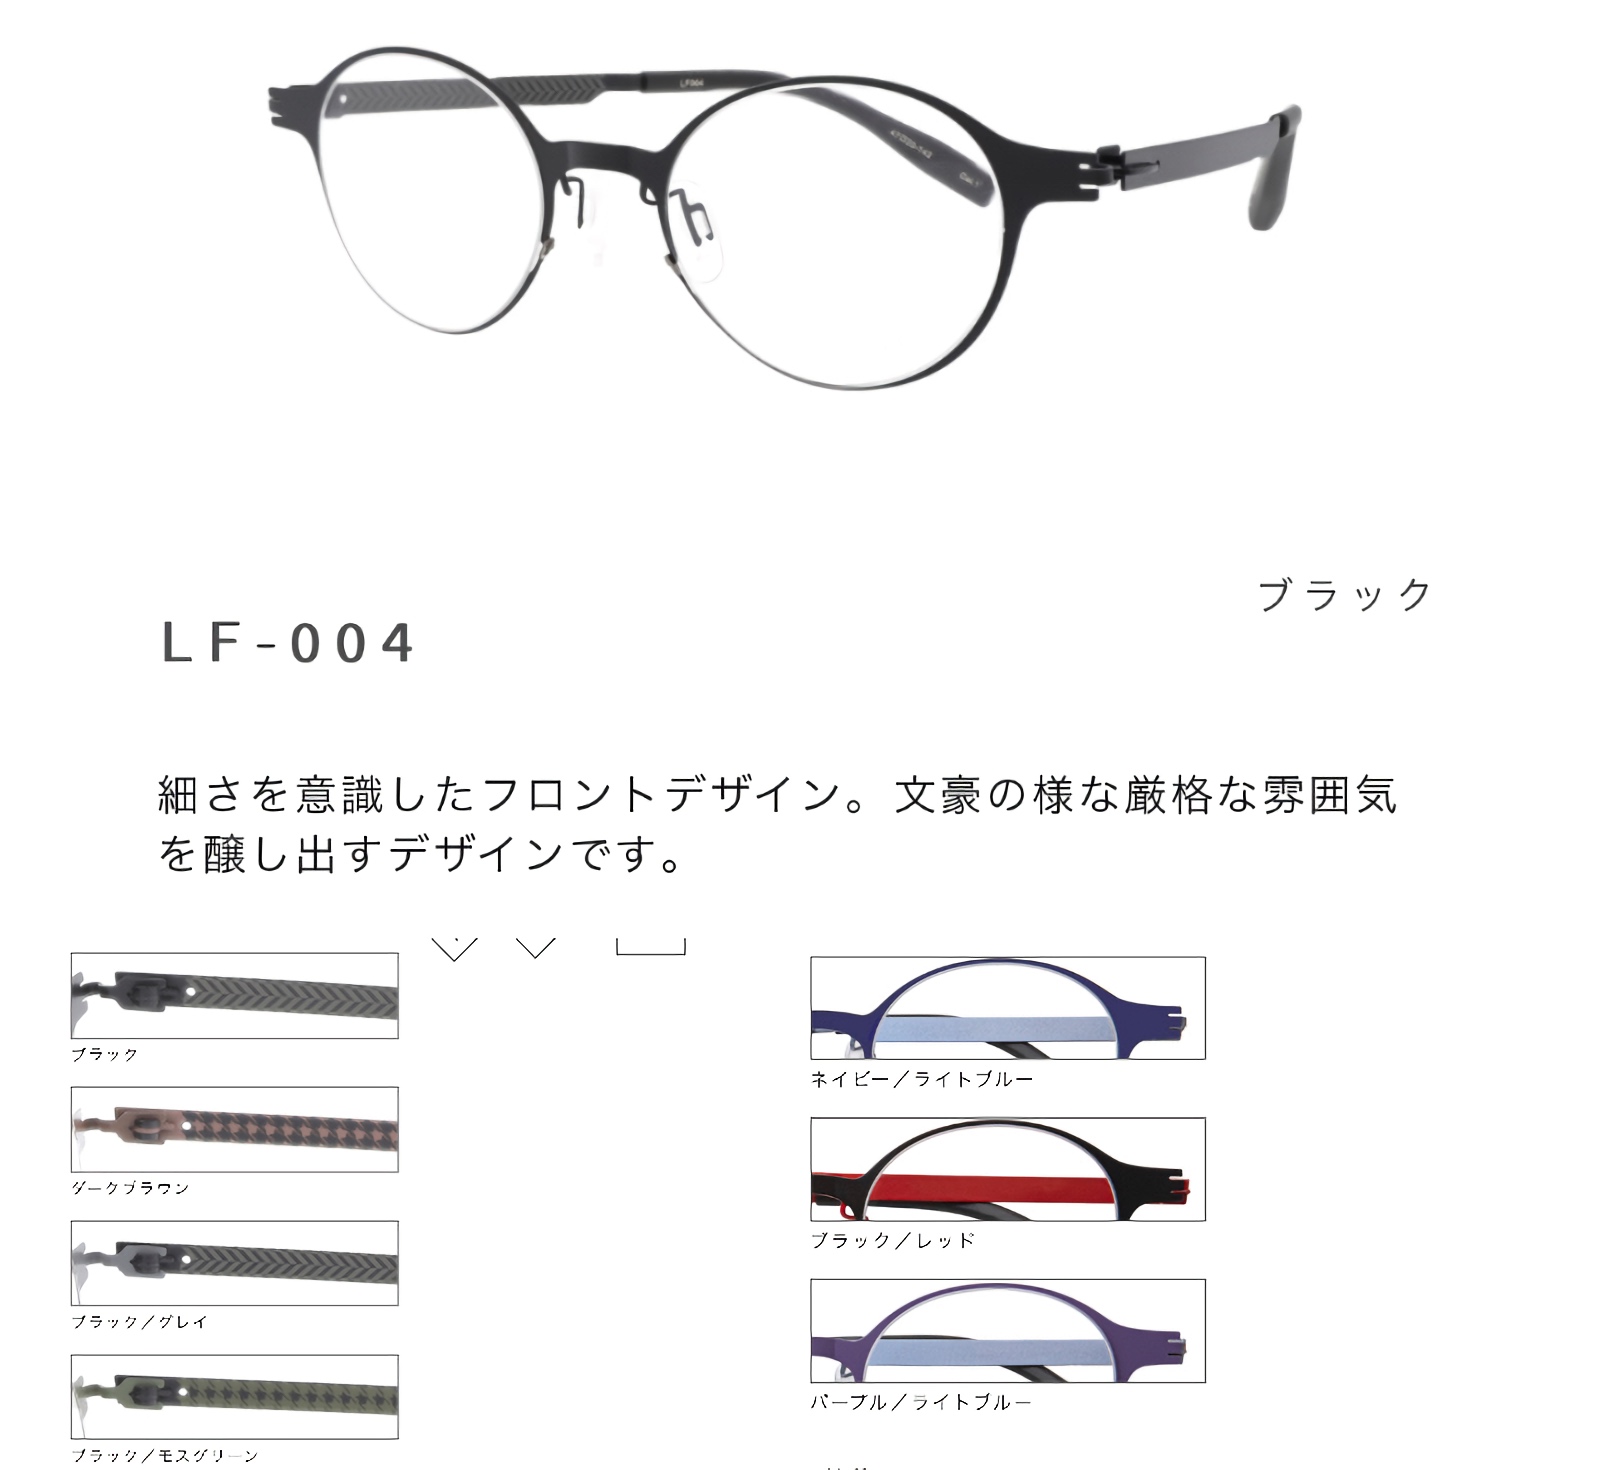 セイコー 眼鏡フレーム LF-004